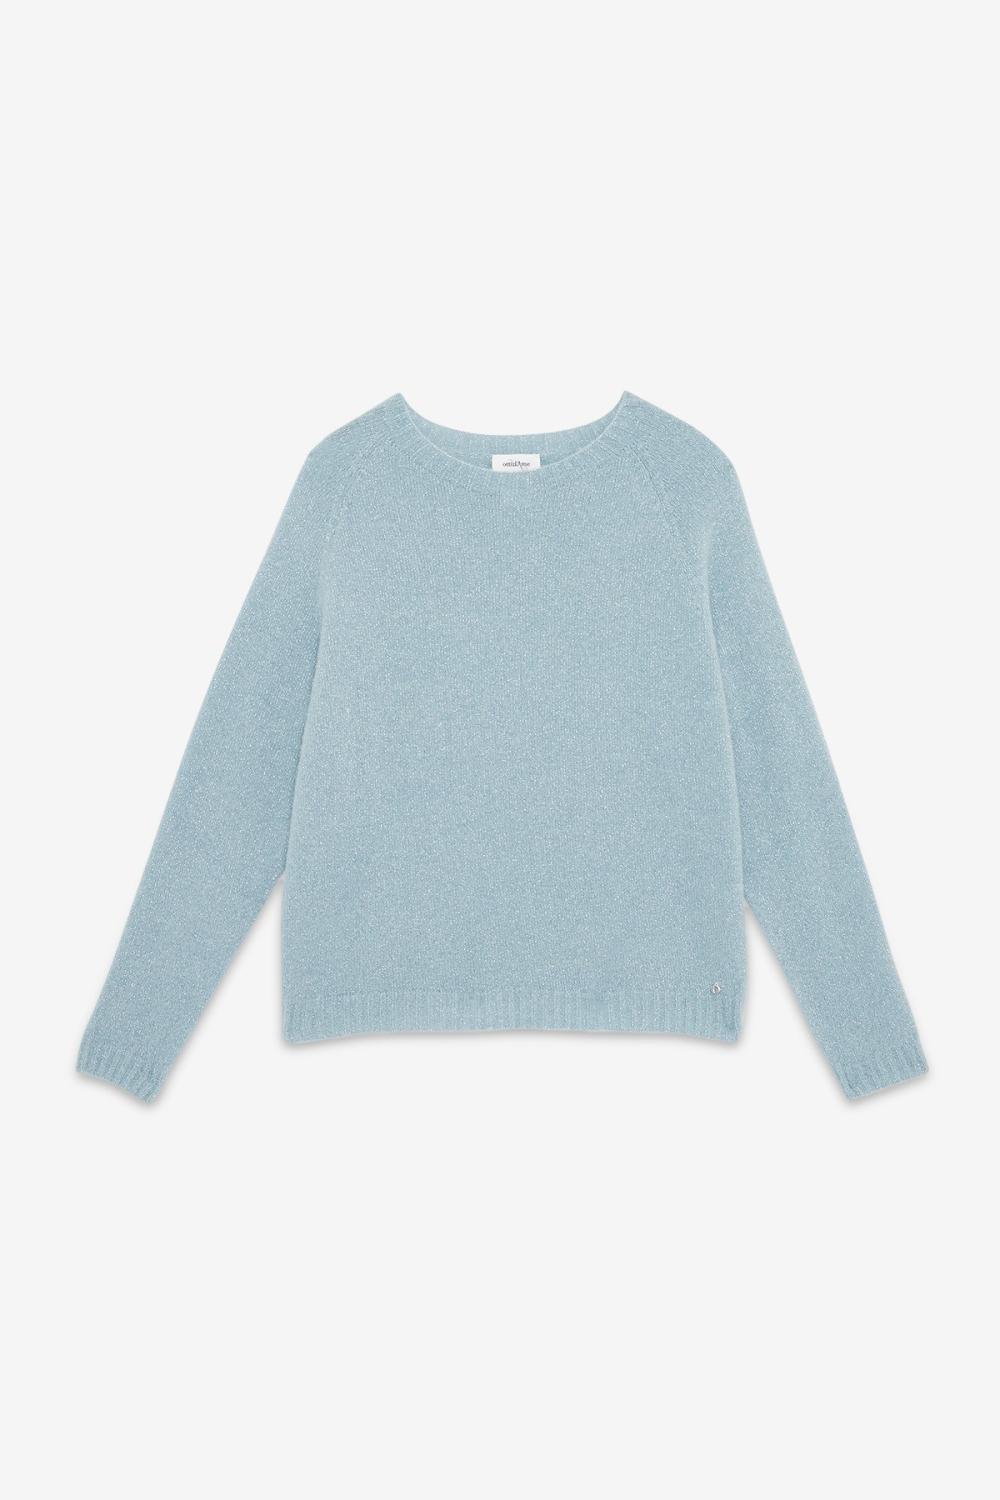 Soft Knit Sweater Sparkle Anice Blue